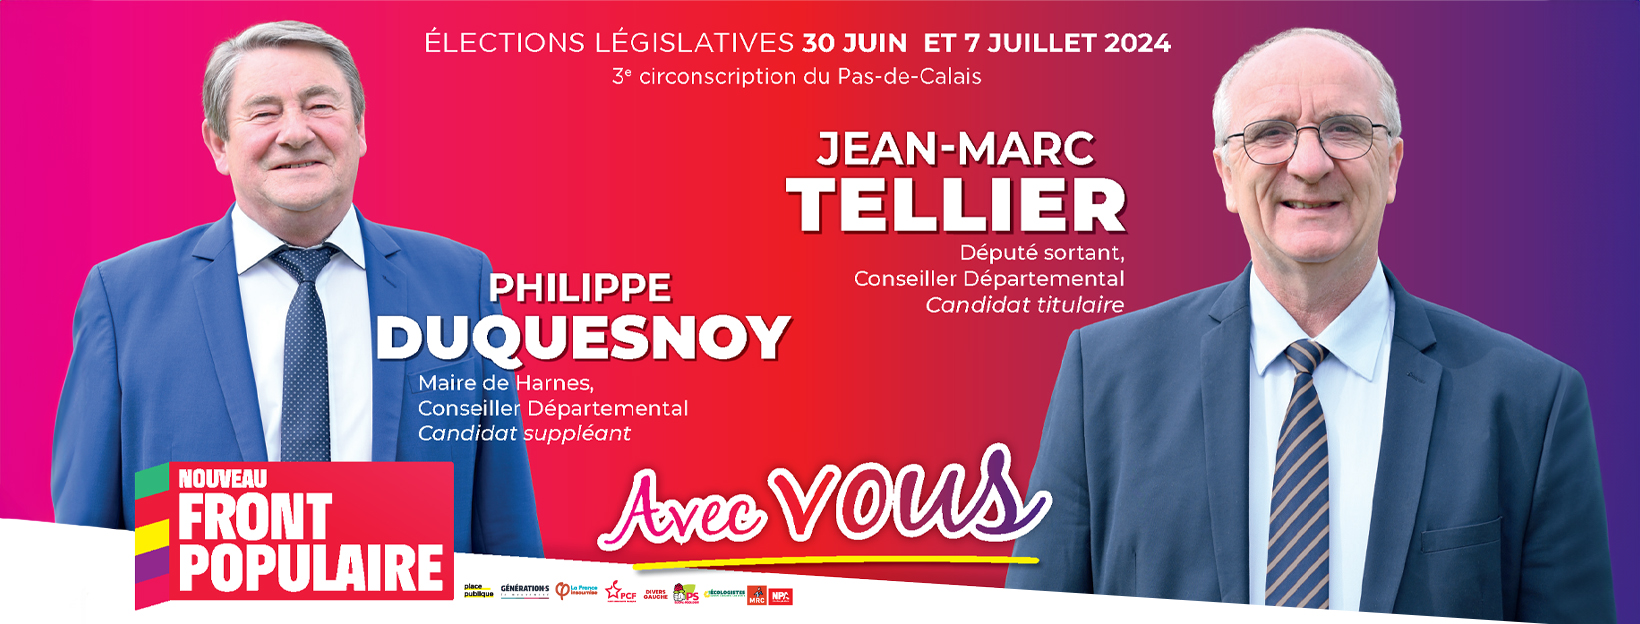 Jean-Marc TELLIER candidat pour le Nouveau Front Populaire, 3ème circonscription du Pas-de-Calais, Élections législatives 2024